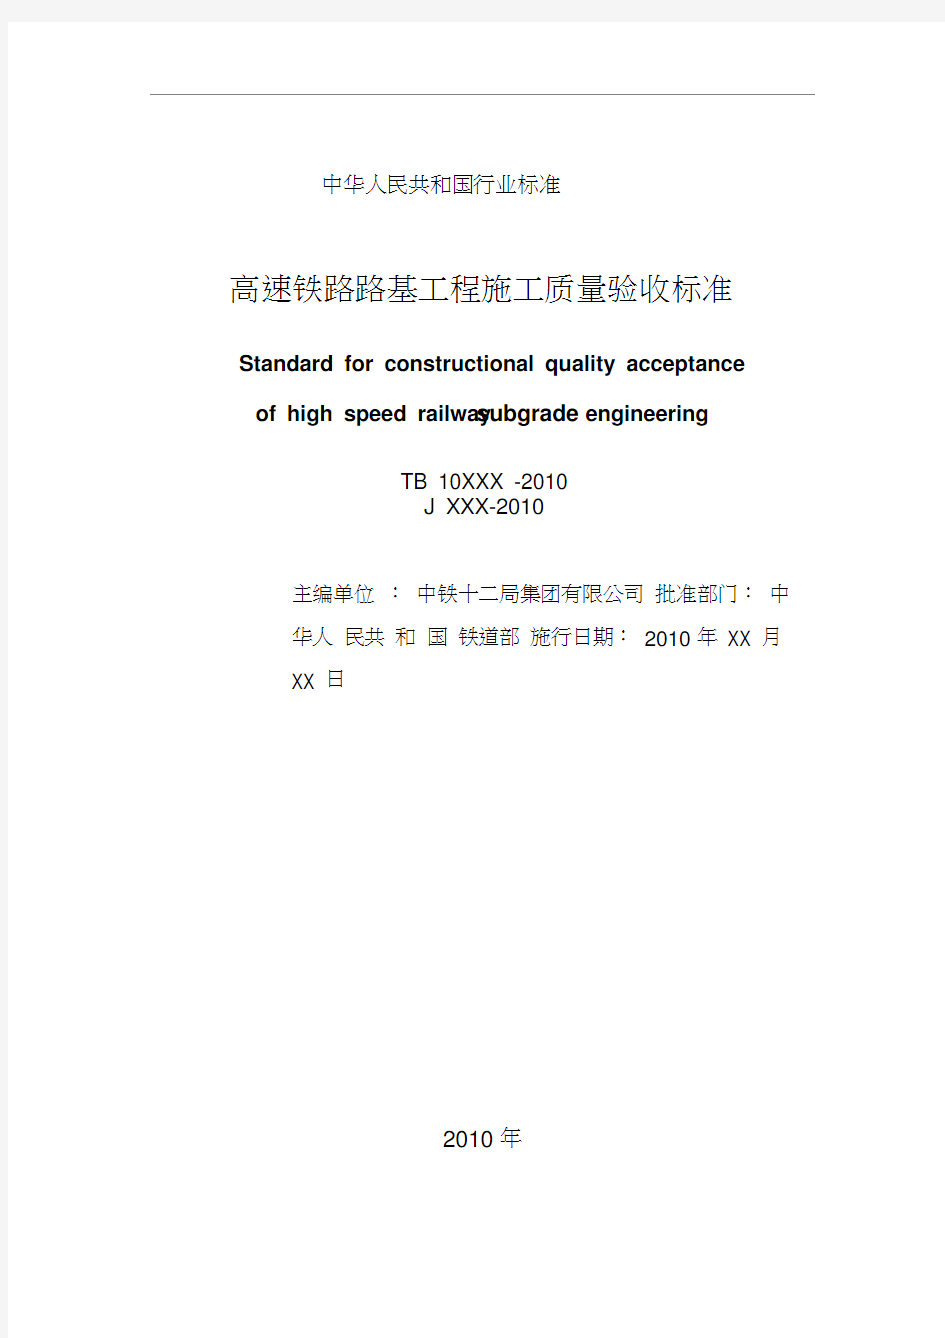 《高速铁路路基工程施工质量验收标准》(tb10751-2010)